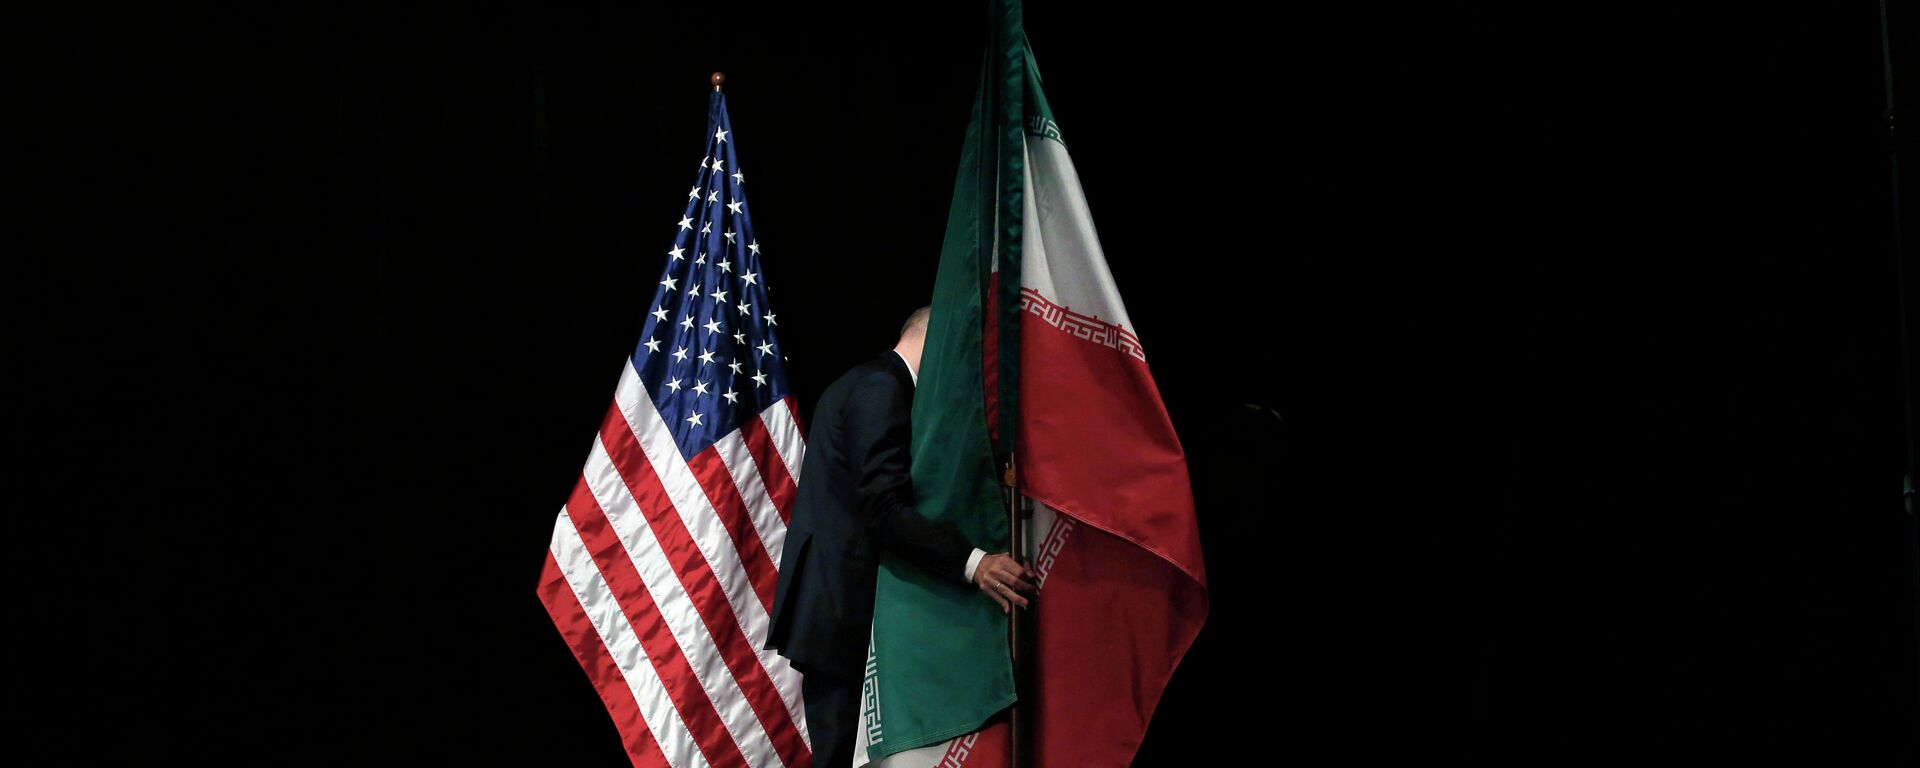 Banderas de EEUU e Irán - Sputnik Mundo, 1920, 12.07.2021